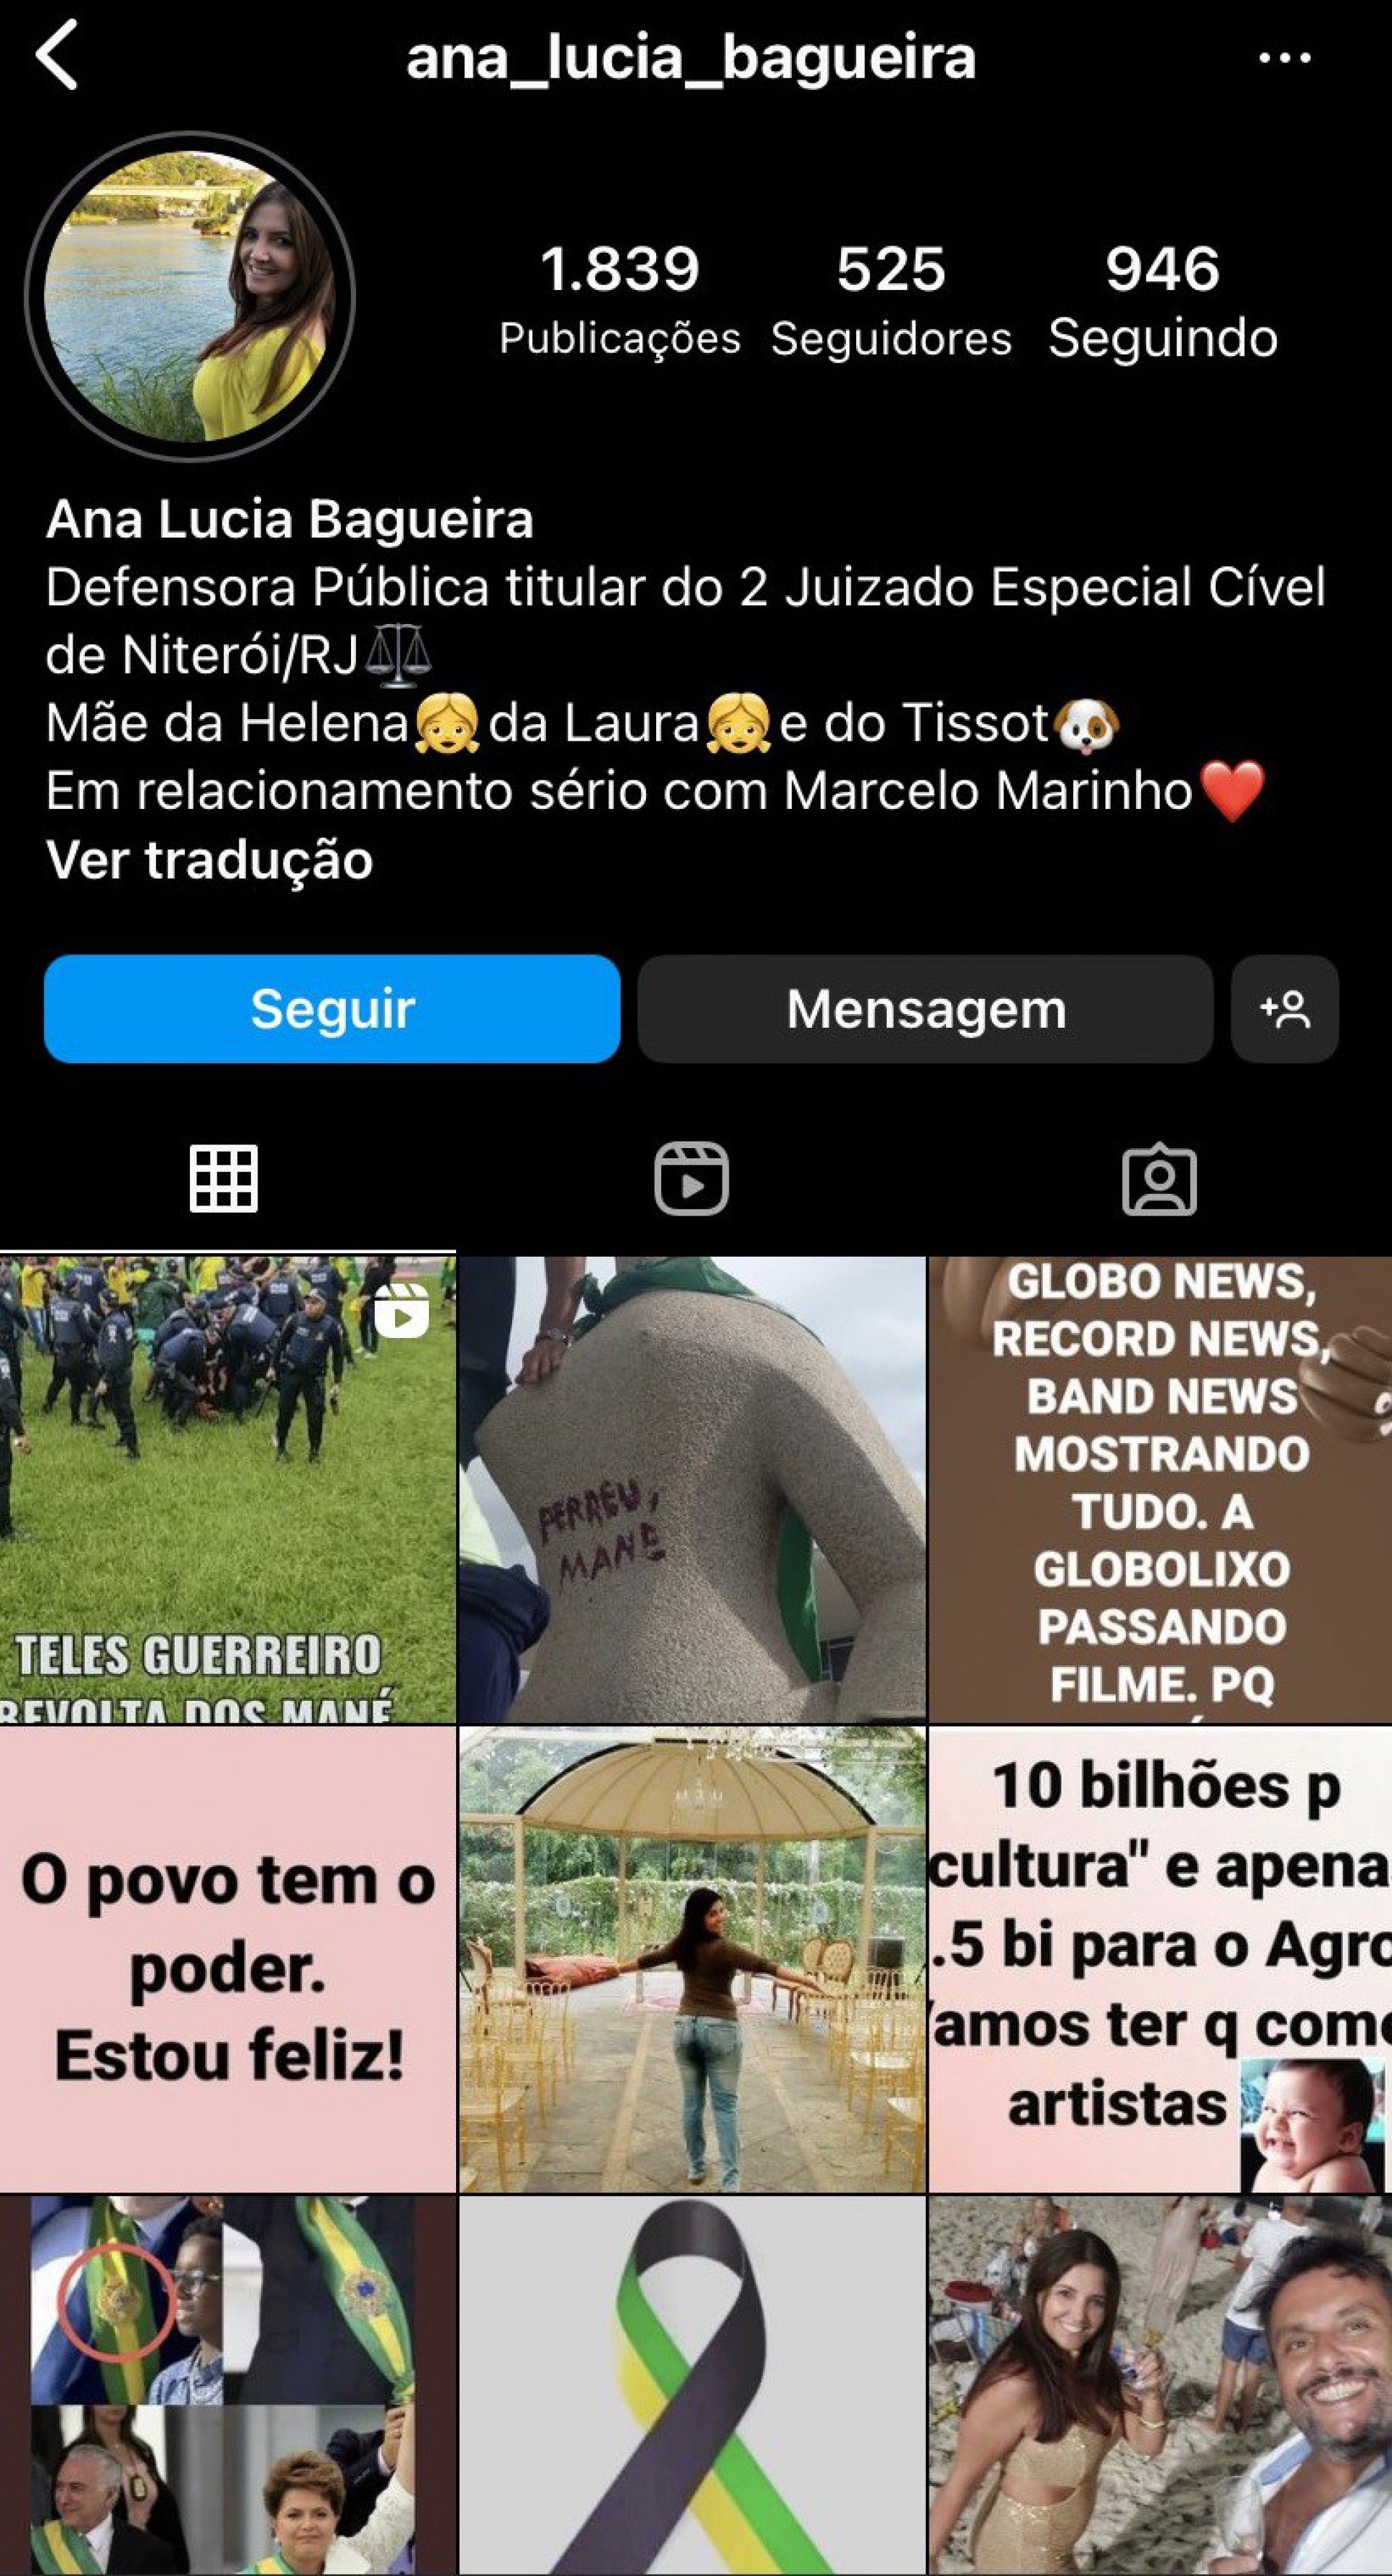 Defensora pública Ana Lúcia Bagueira, lotada em Niterói, manifesta apoio a atos golpistas em Brasília  - Reprodução